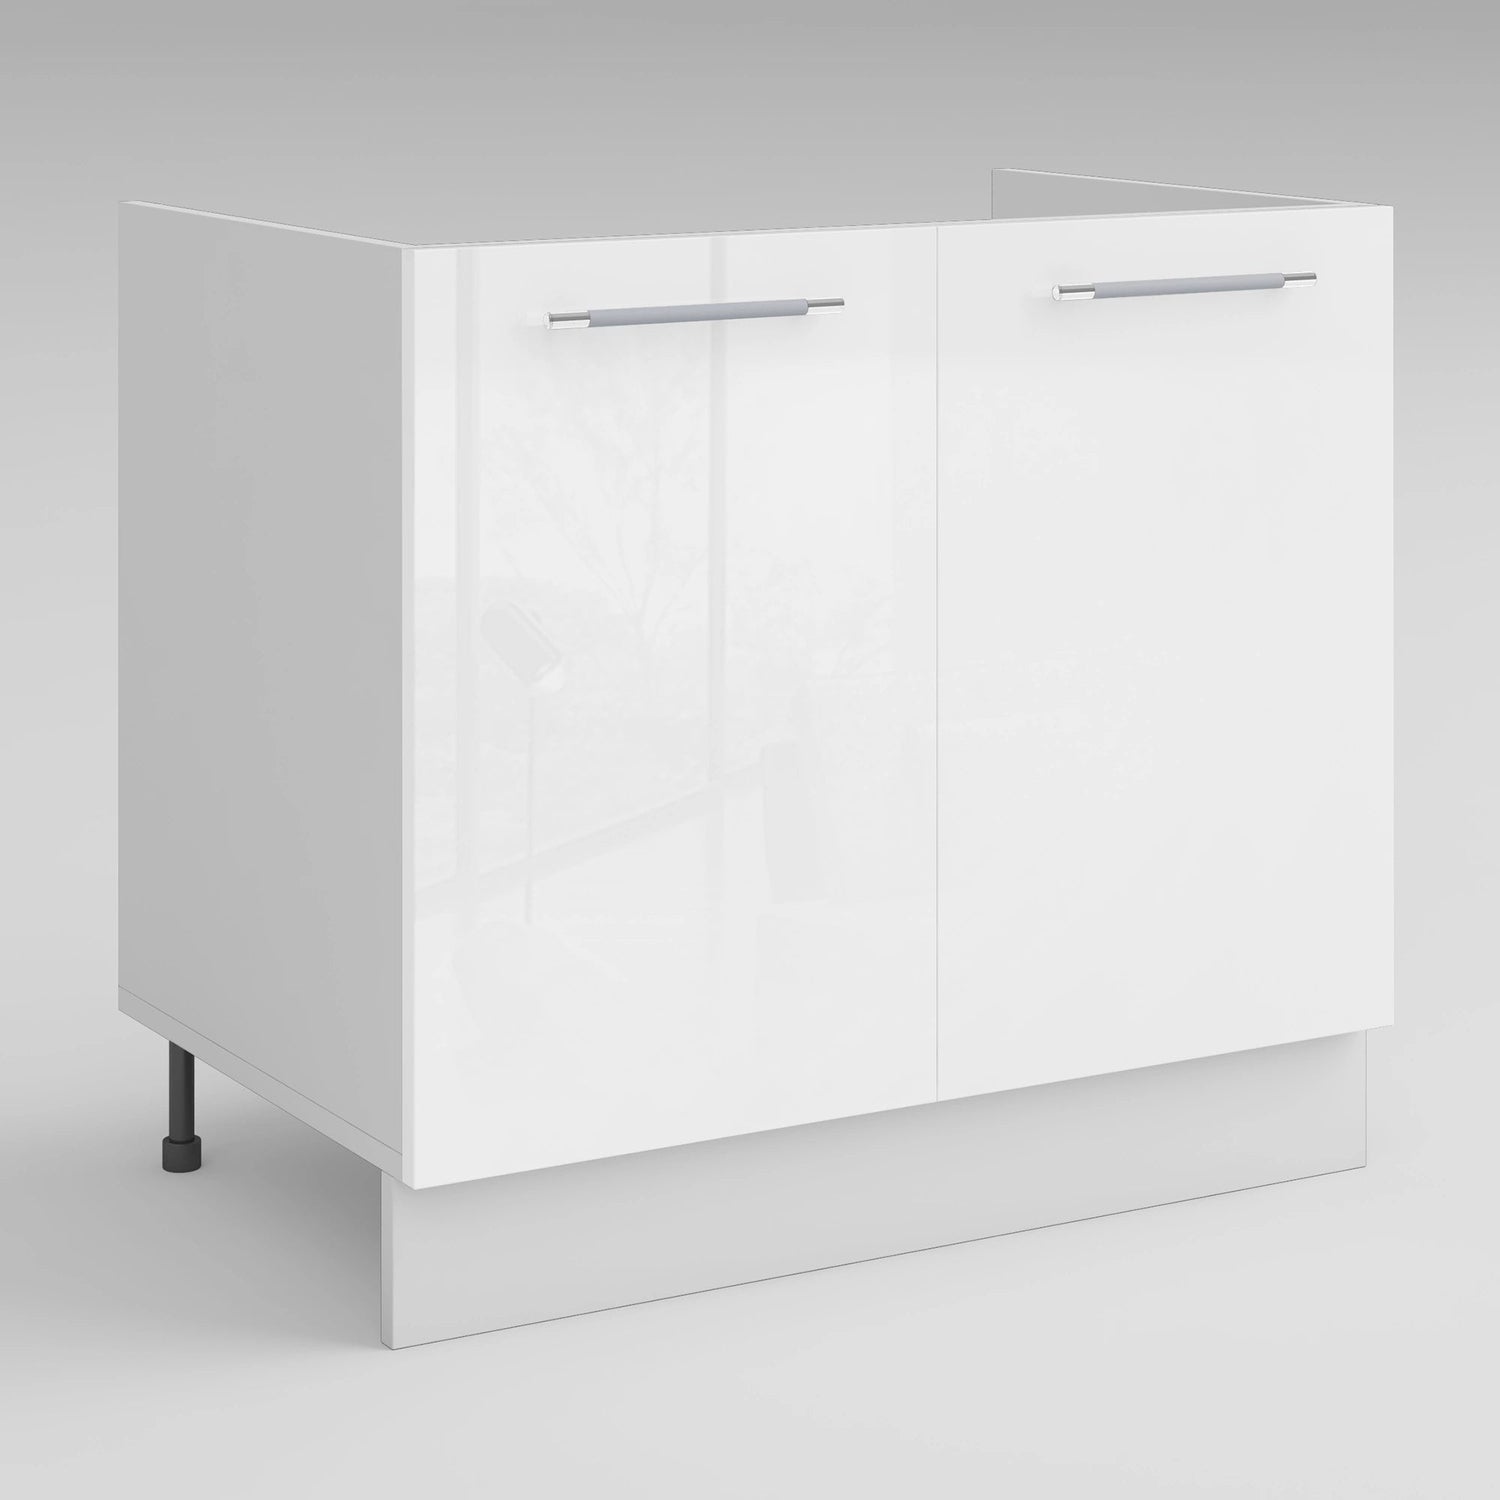 Meuble sous-évier de cuisine Primalight blanc mat l. 120 cm x H. 87,9 cm